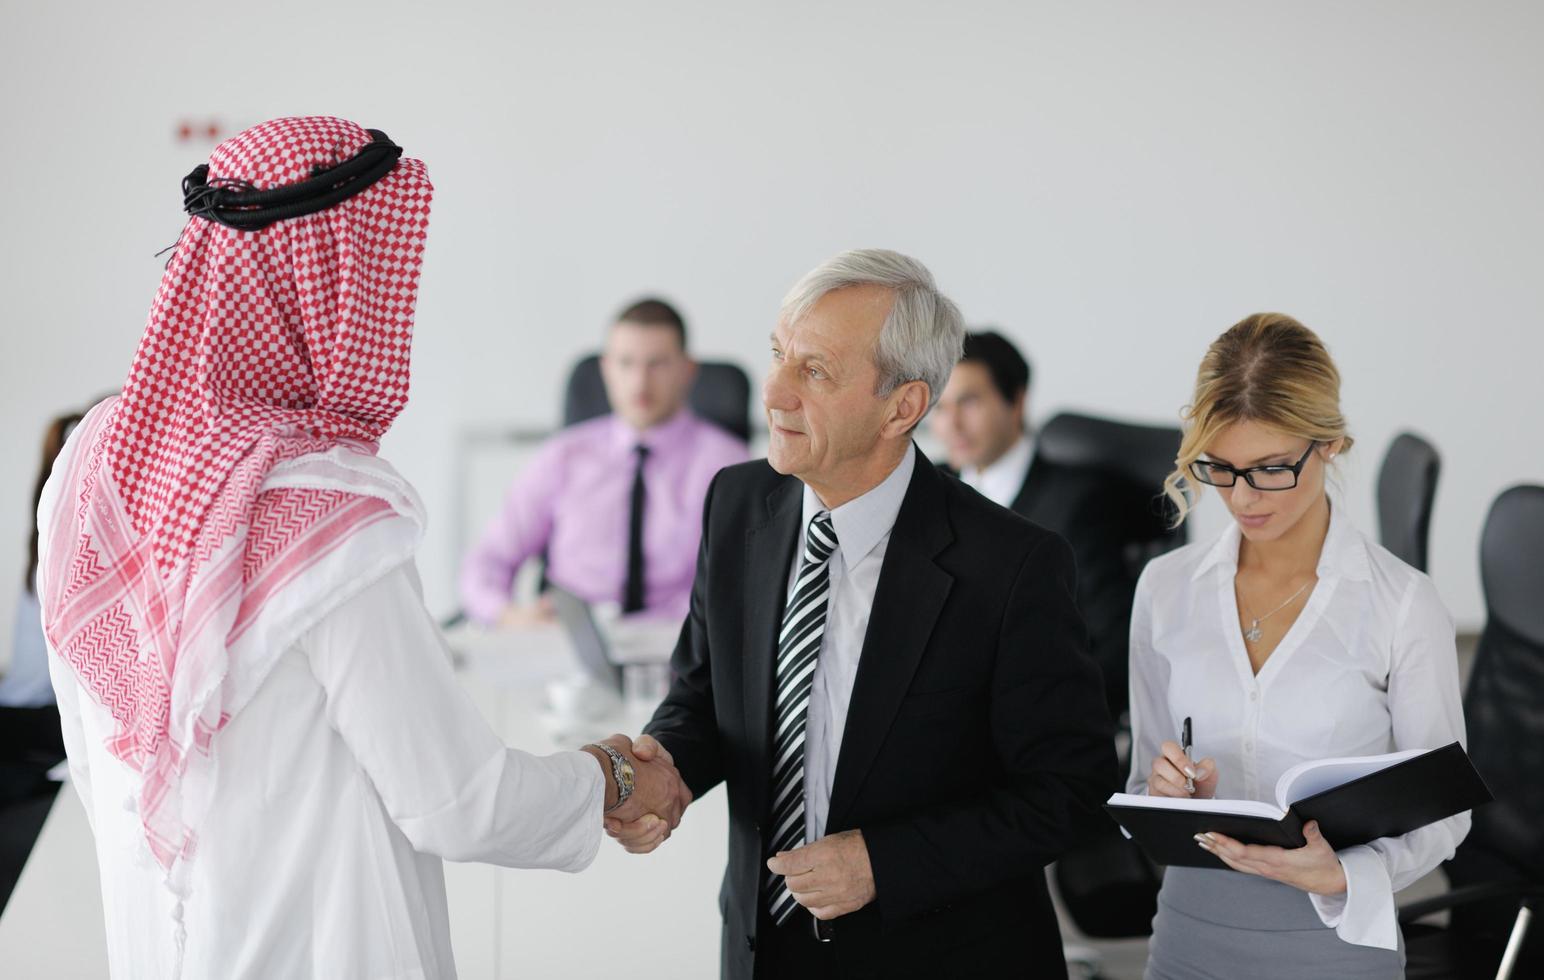 homme d'affaires arabe à la réunion photo